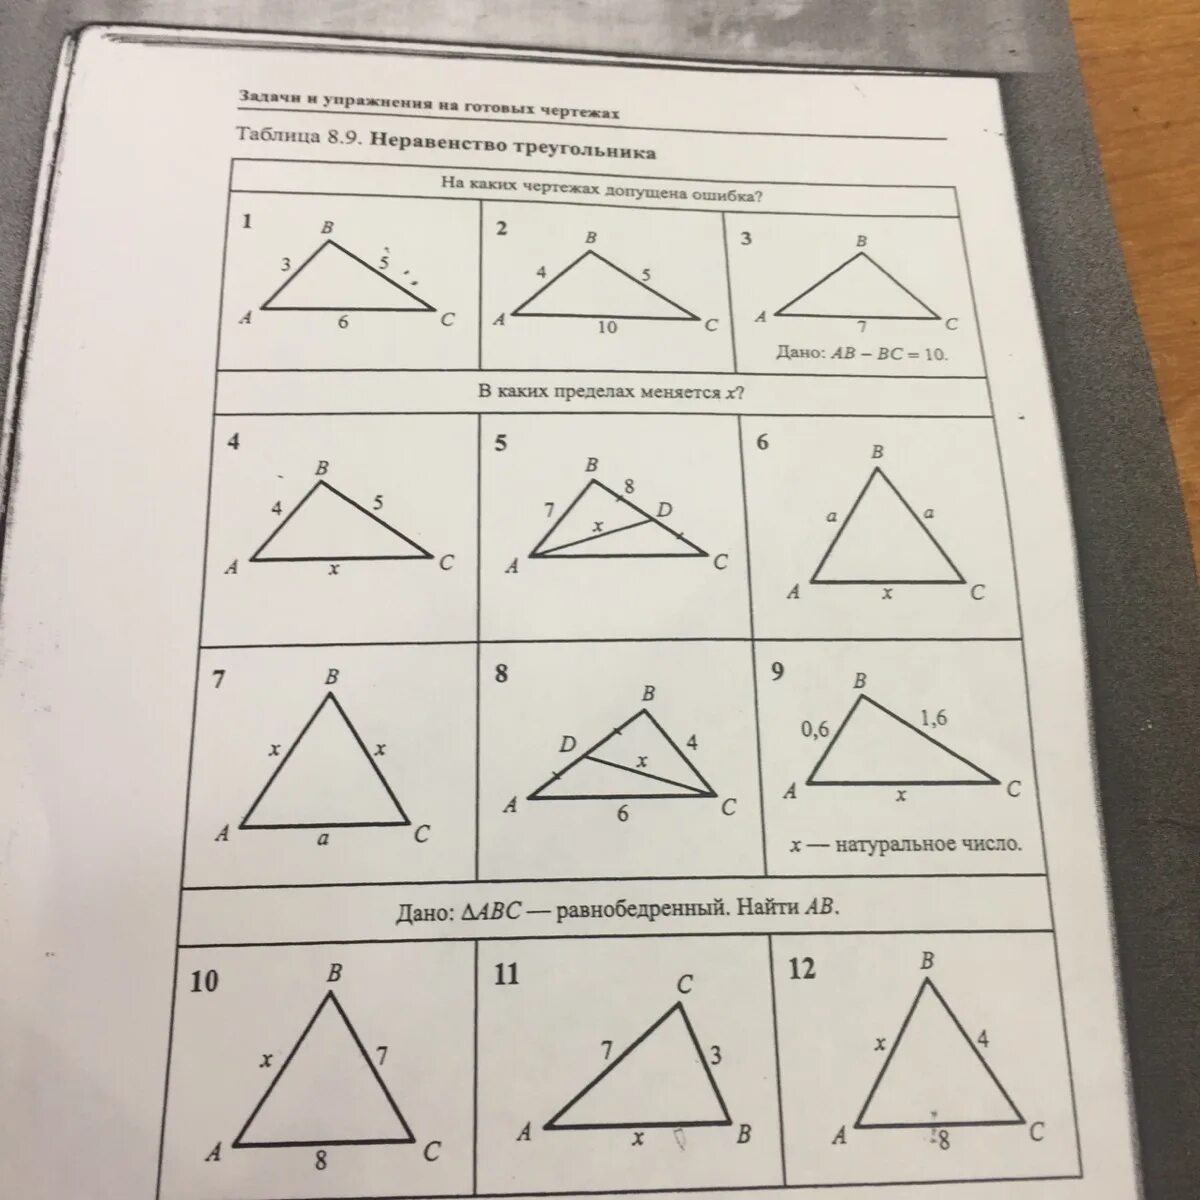 Неравенство треугольника чертеж. Неравенство треугольника задачи на готовых чертежах. Неравенство треугольника задачи. Неравенство треугольника на готовых чертежах. Задачи и упражнения на готовых чертежах.